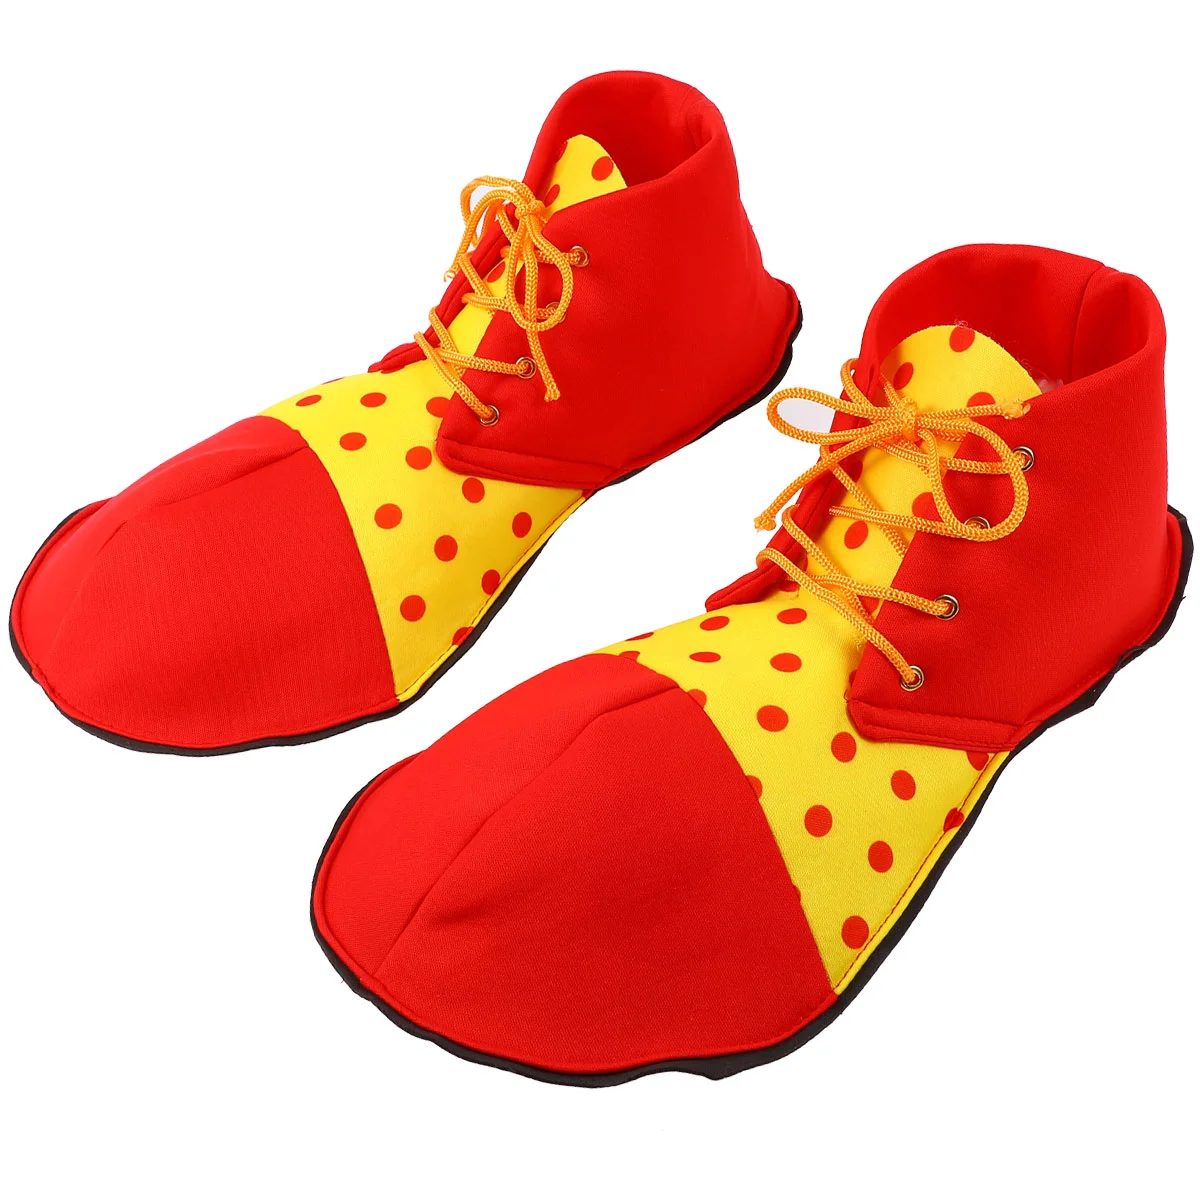 

Шляпа клоун повязка на голову Шут Circusprops шляпы Детские карнавальные повязки для обуви костюмы